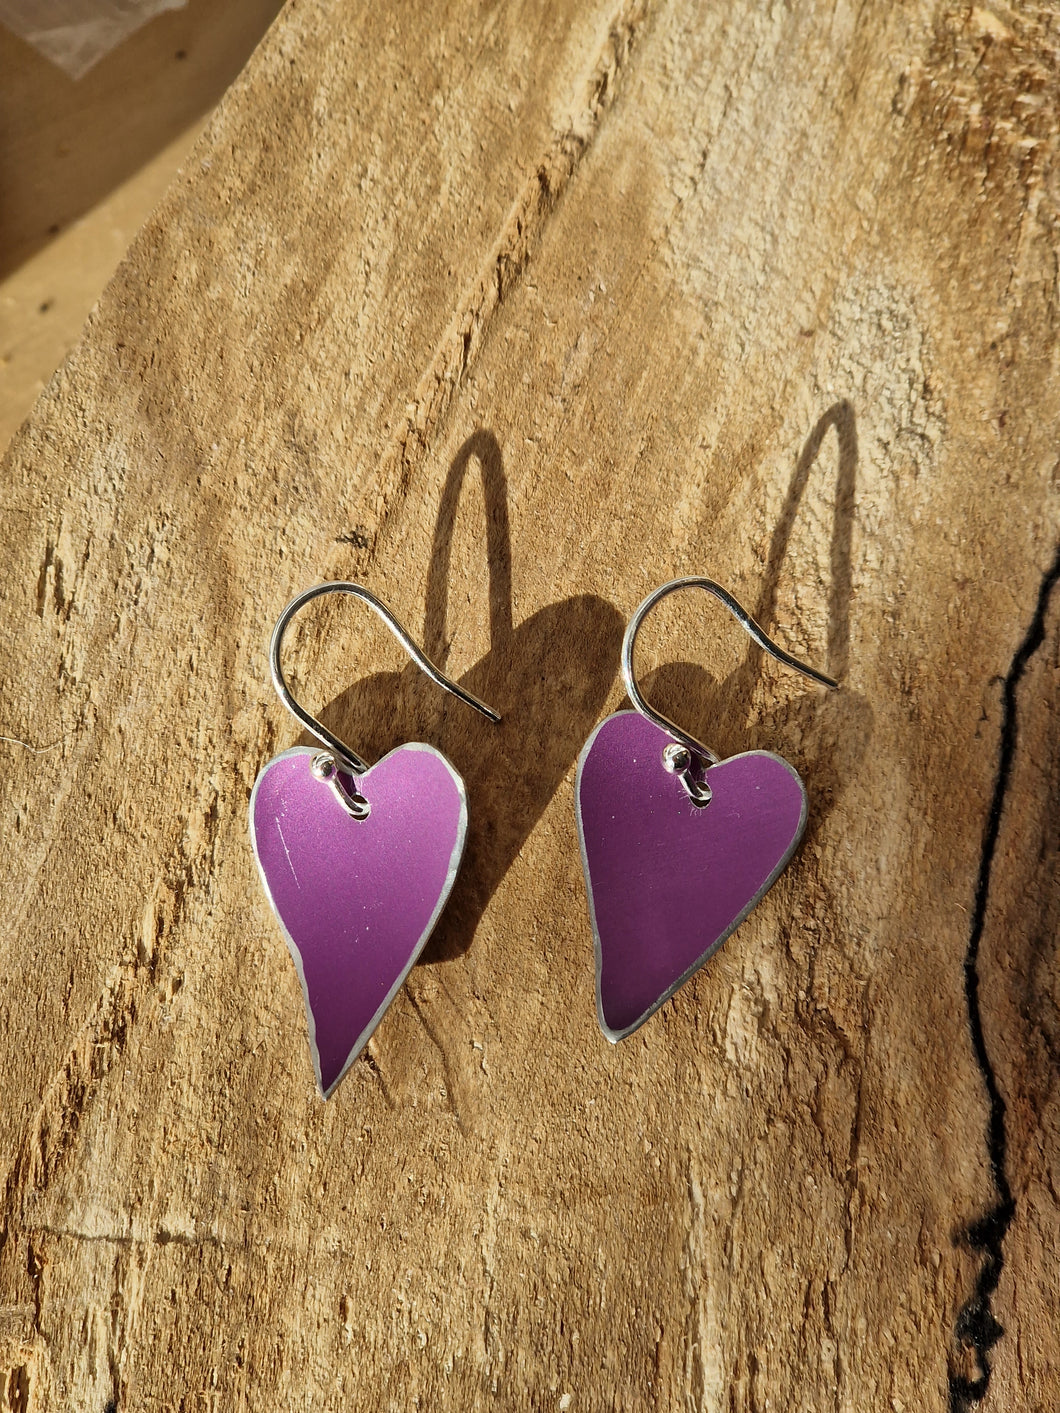 Anodised Aluminium Heart Earrings